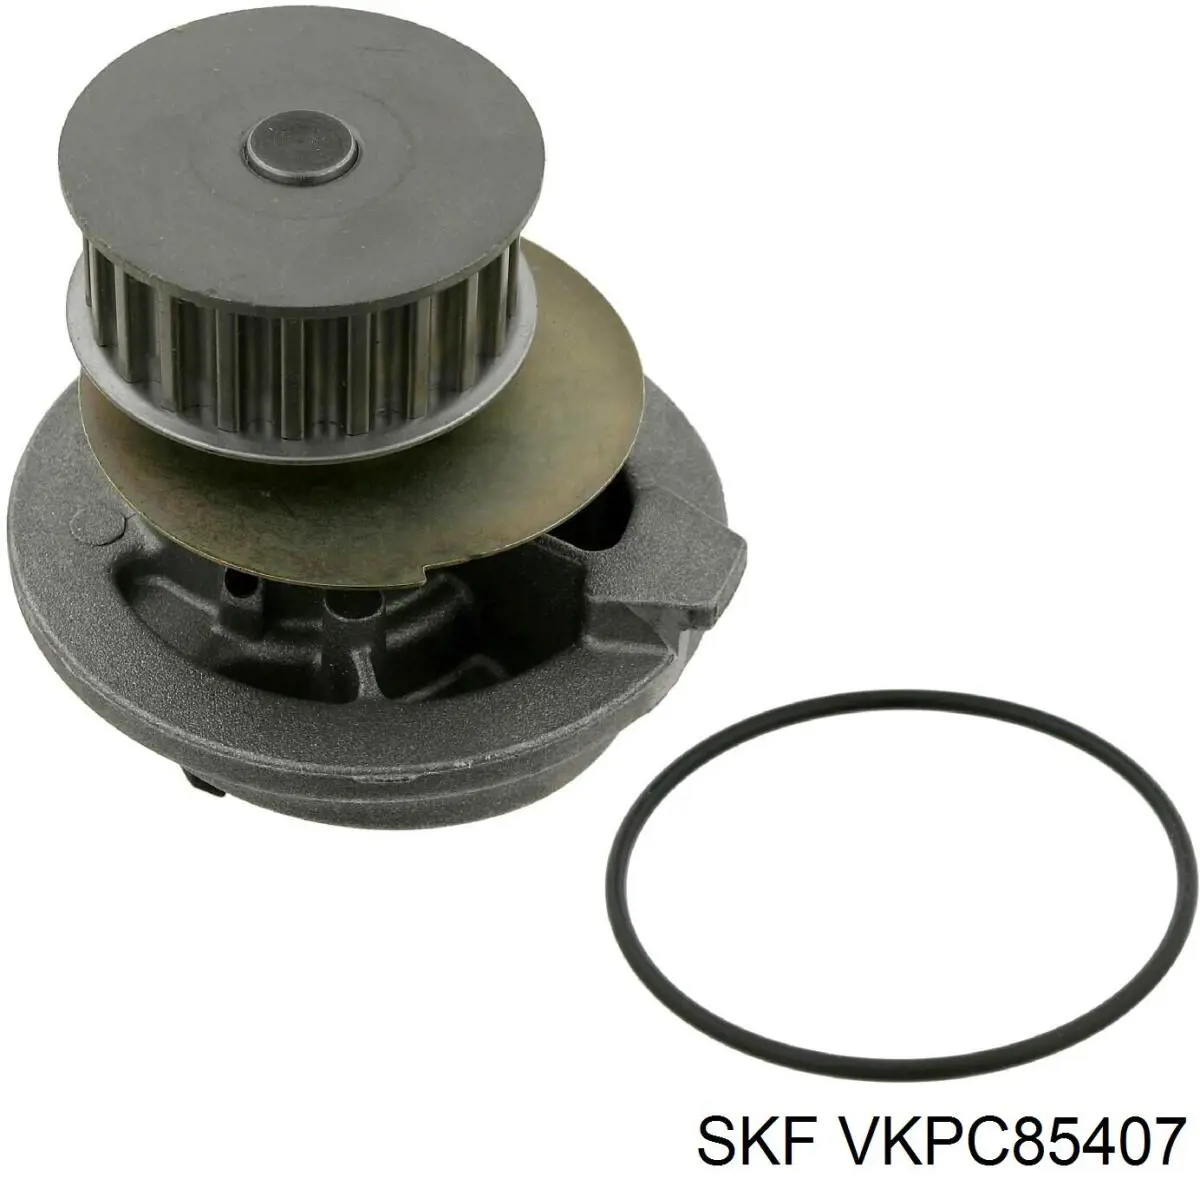 VKPC 85407 SKF bomba de agua